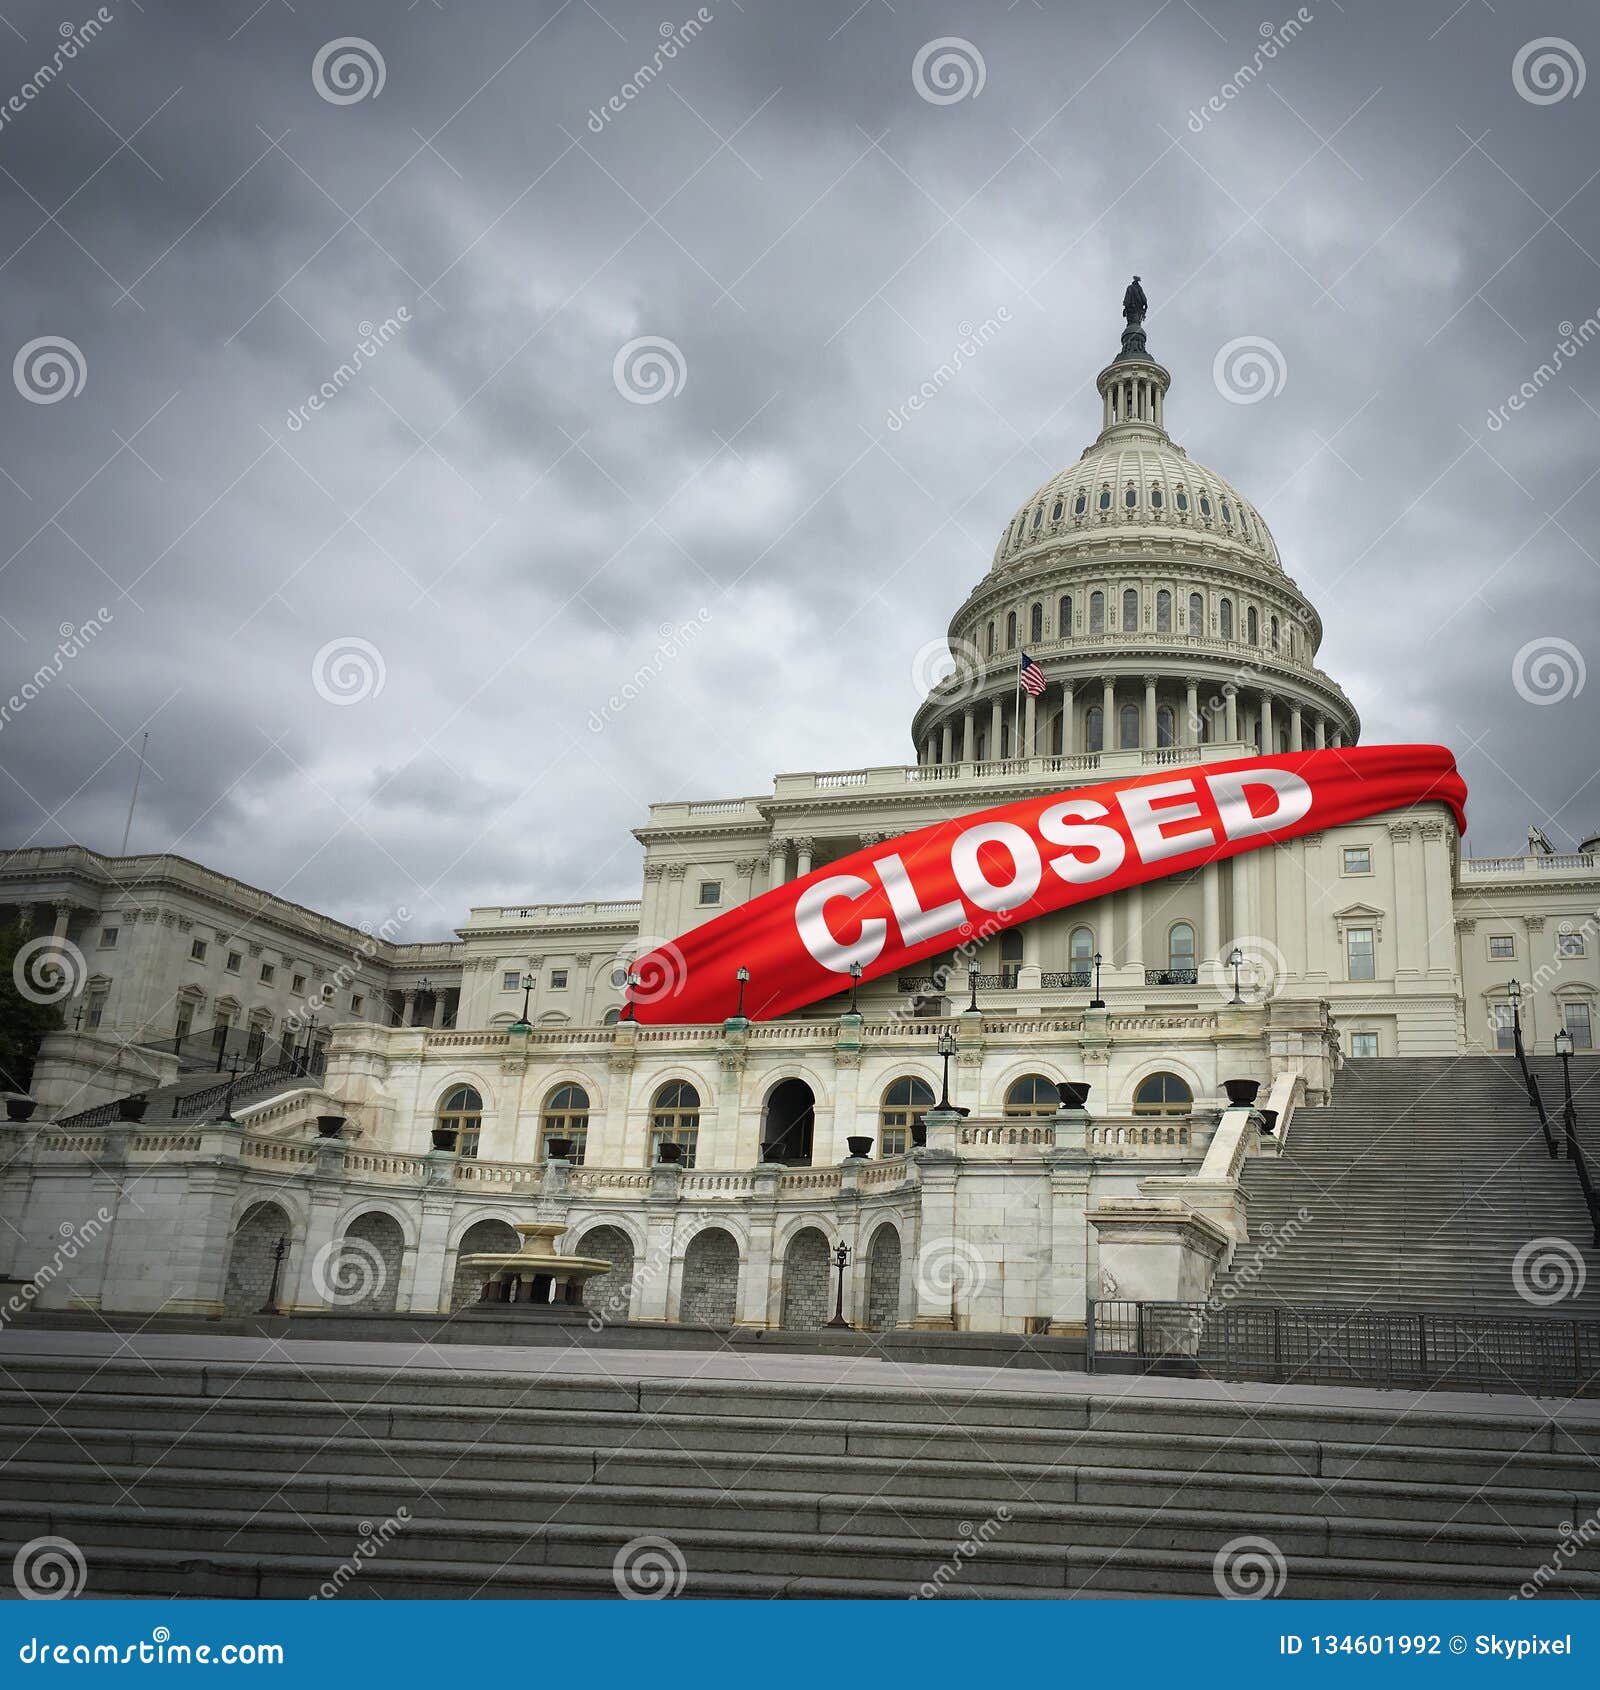 usa government shutdown